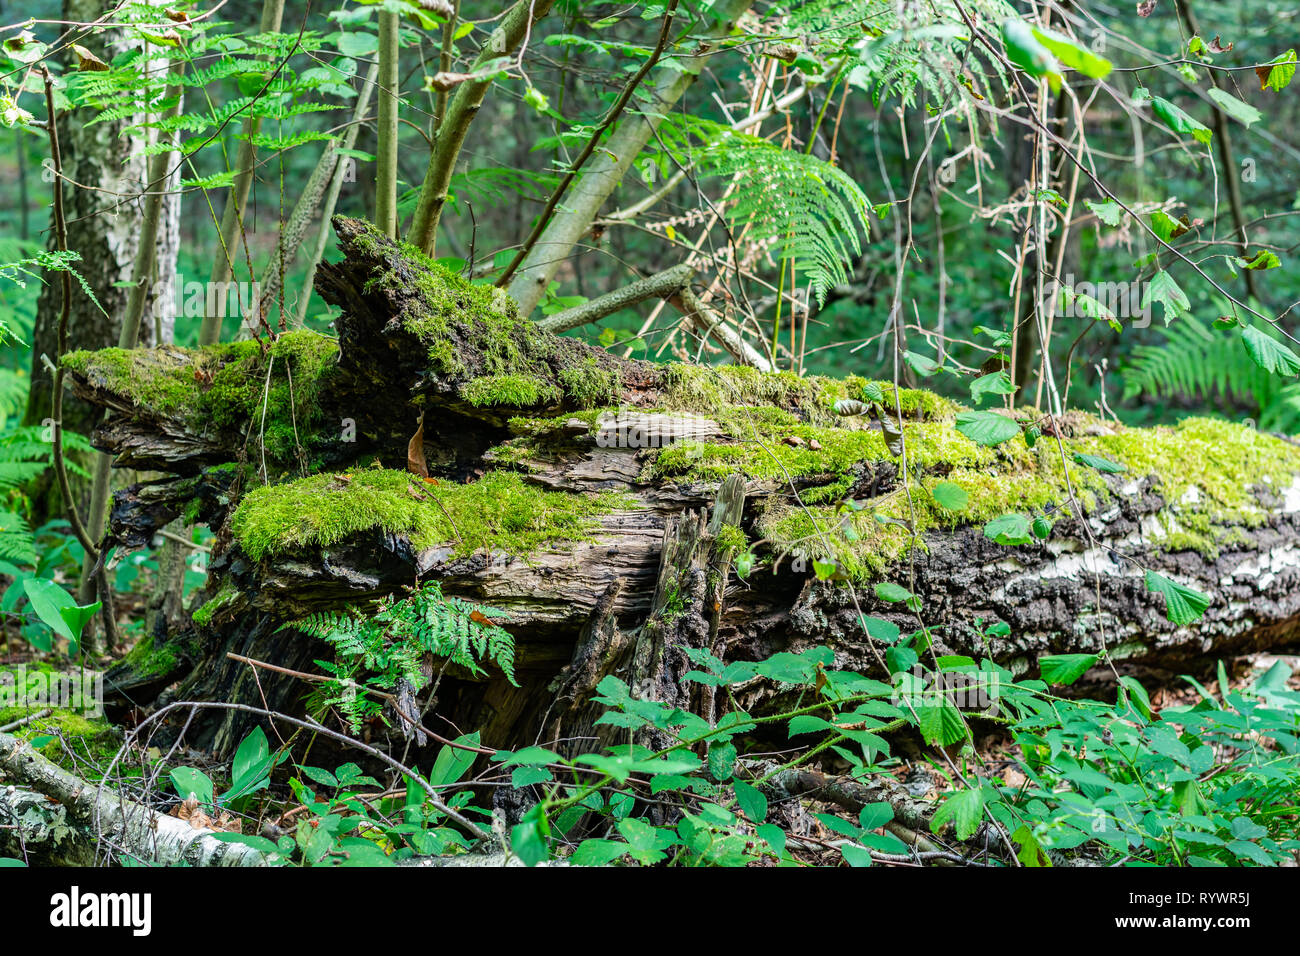 Wald Landschaften Konzept: Alte trocken gefallenen Baum im Wald bewachsen mit Moos und Pflanzen. Stockfoto